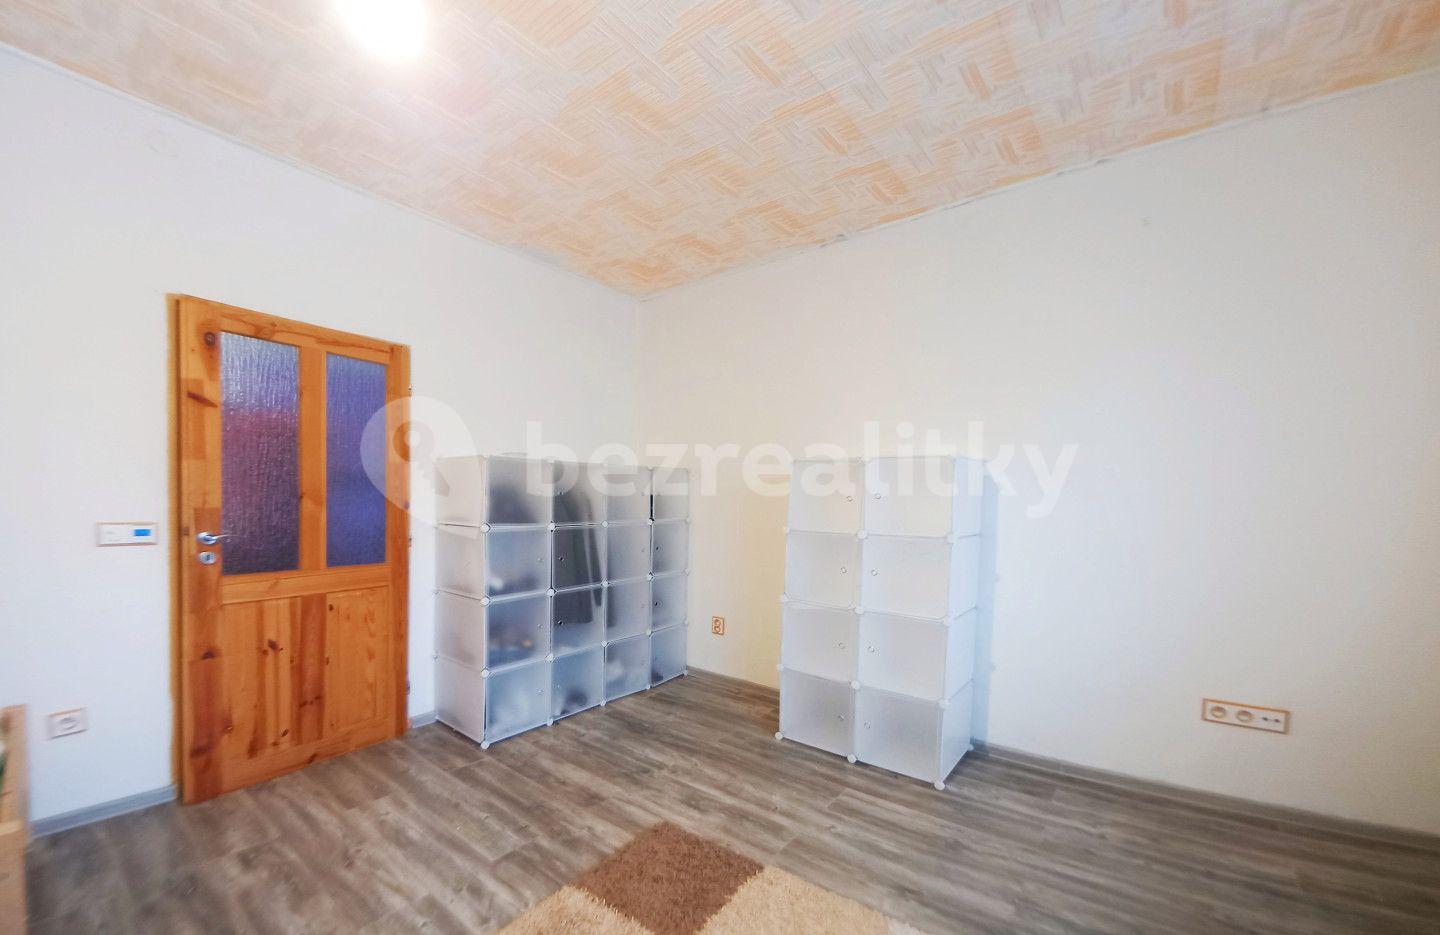 1 bedroom with open-plan kitchen flat for sale, 42 m², Masarykova, Kamenice nad Lipou, Vysočina Region